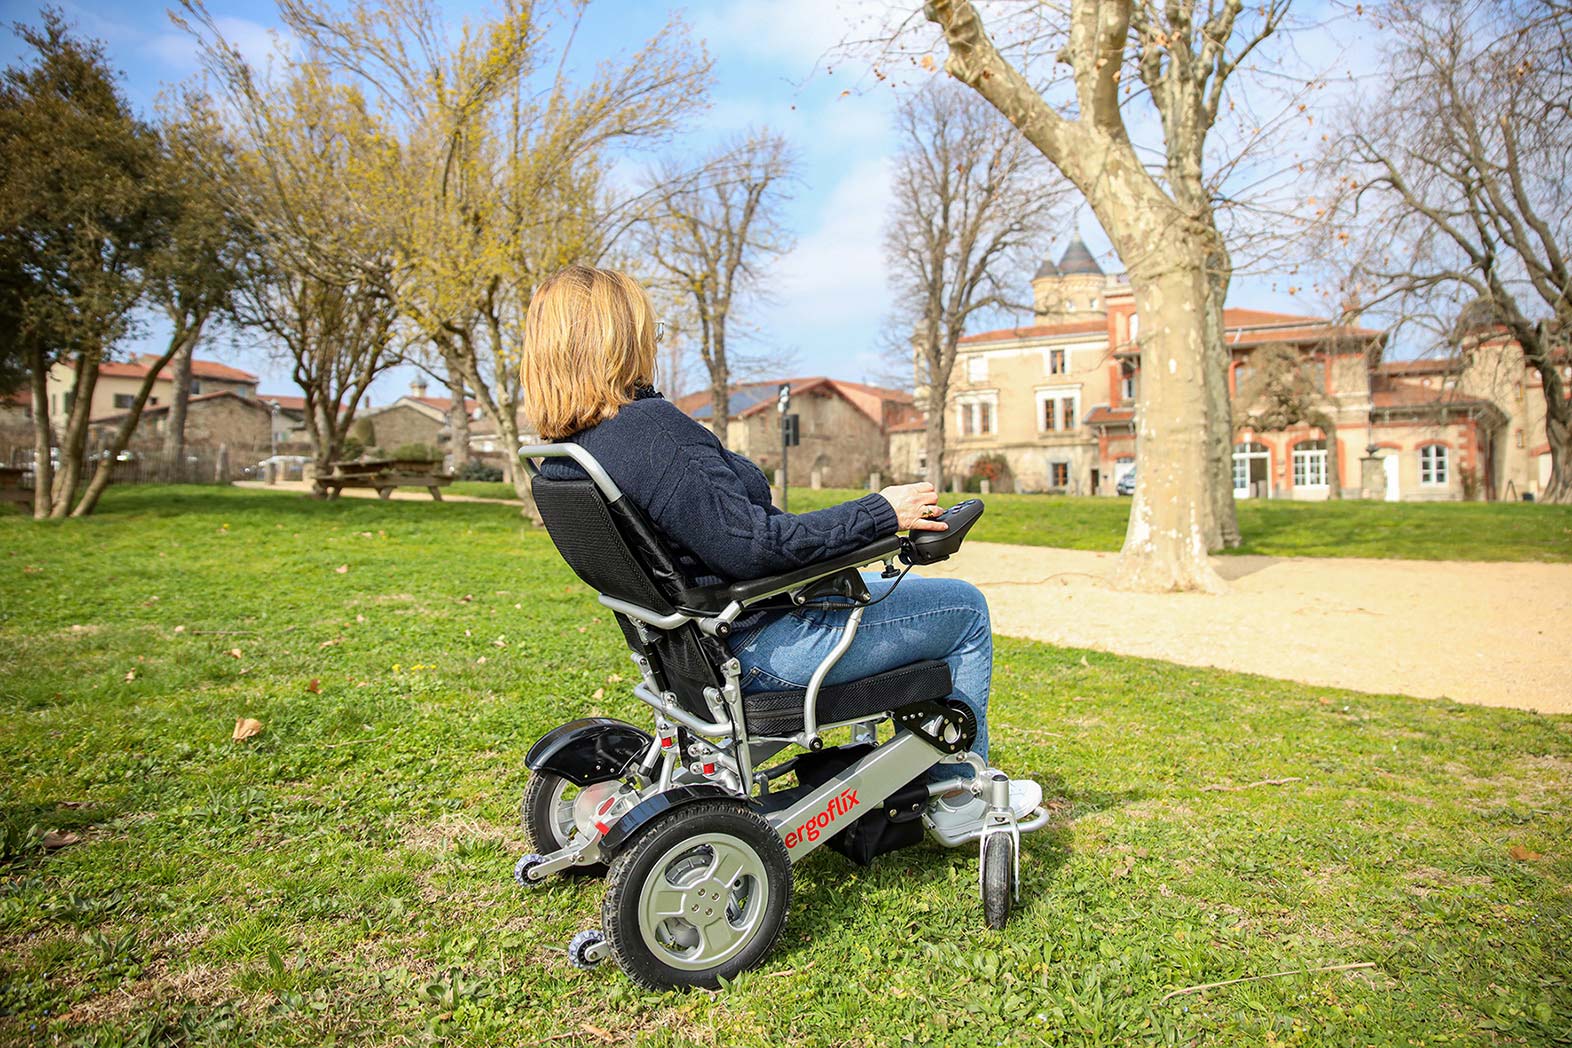 Fauteuil roulant électrique avec dossier inclinable Ergoflix L-Back déplié, utilisé par une personne en situation de mobilité réduite sur une pelouse dans un parc